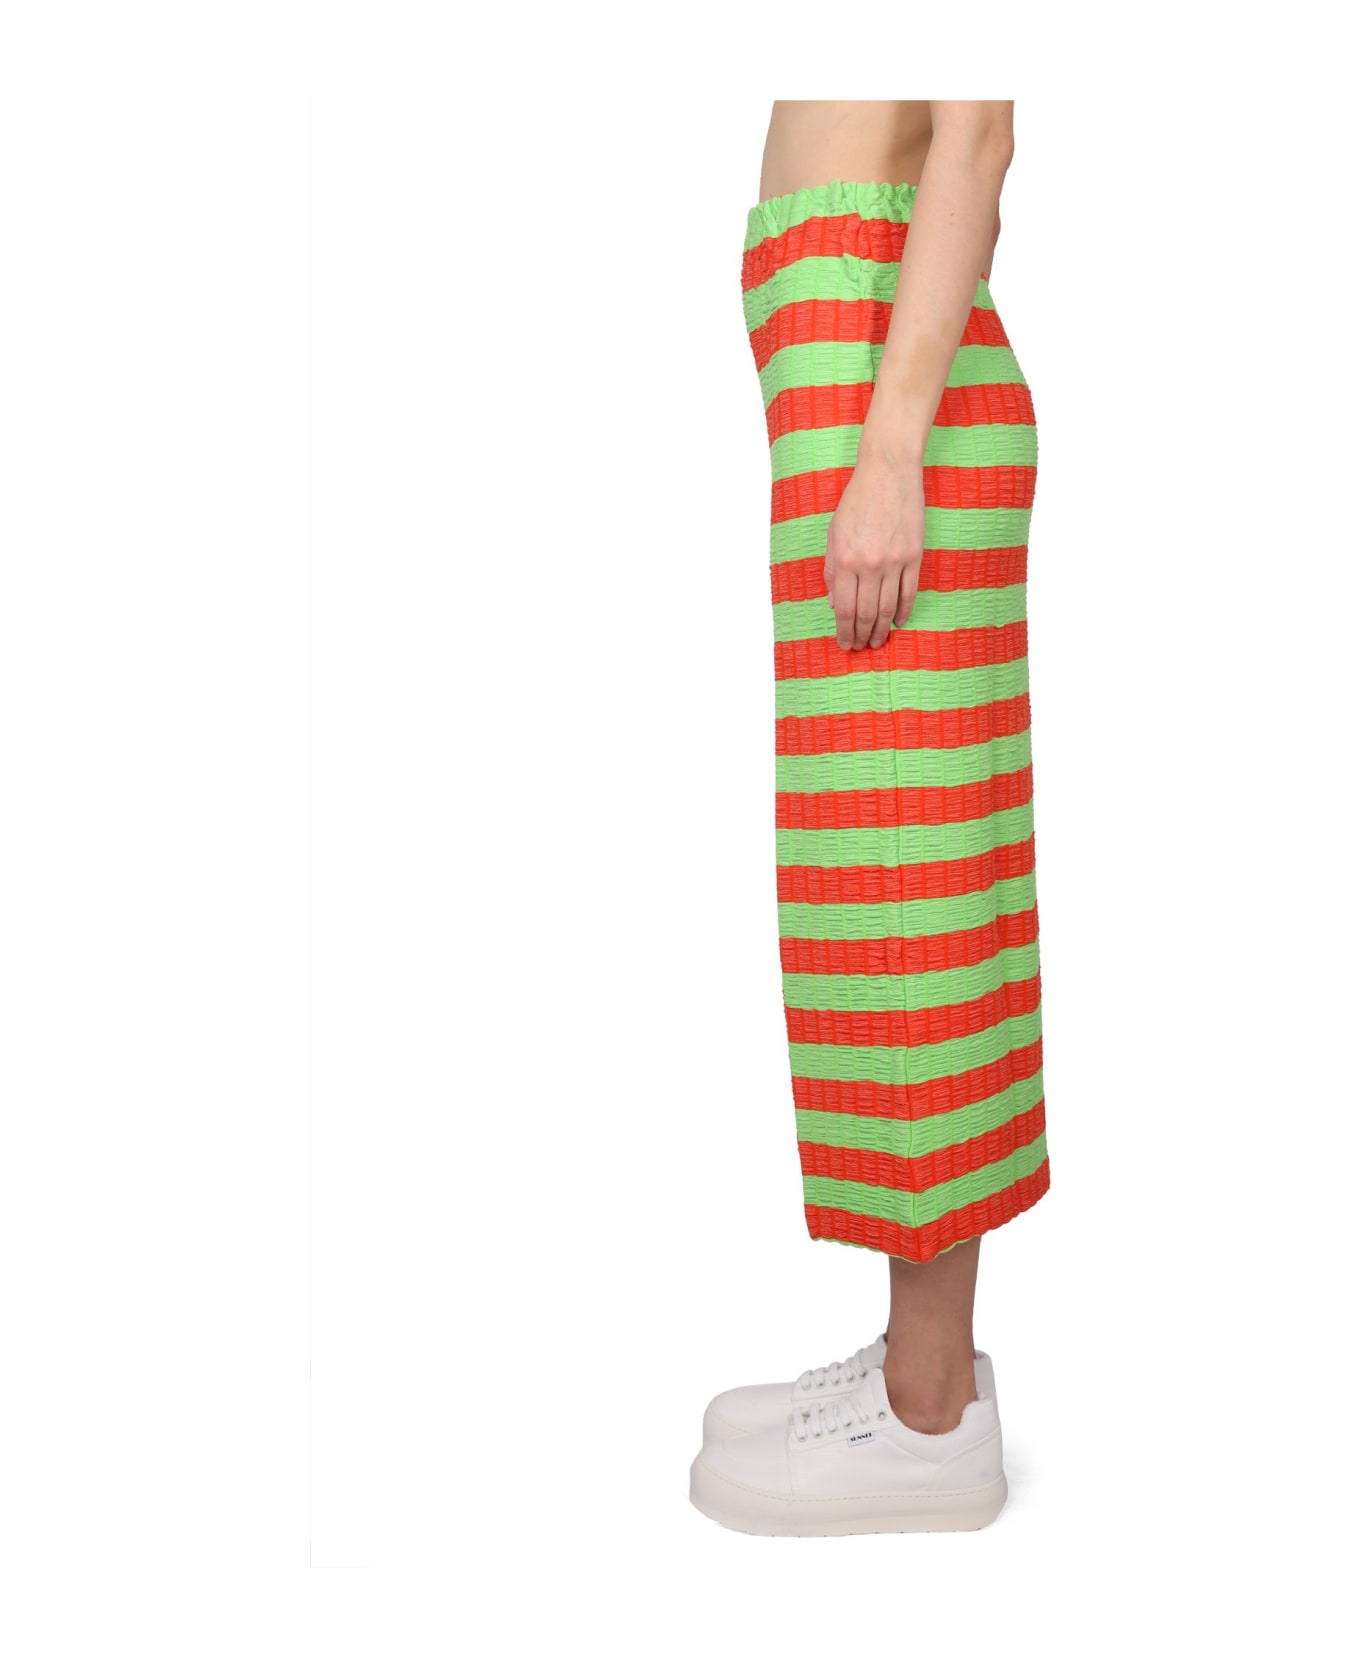 Sunnei Striped Skirt - MULTICOLOR